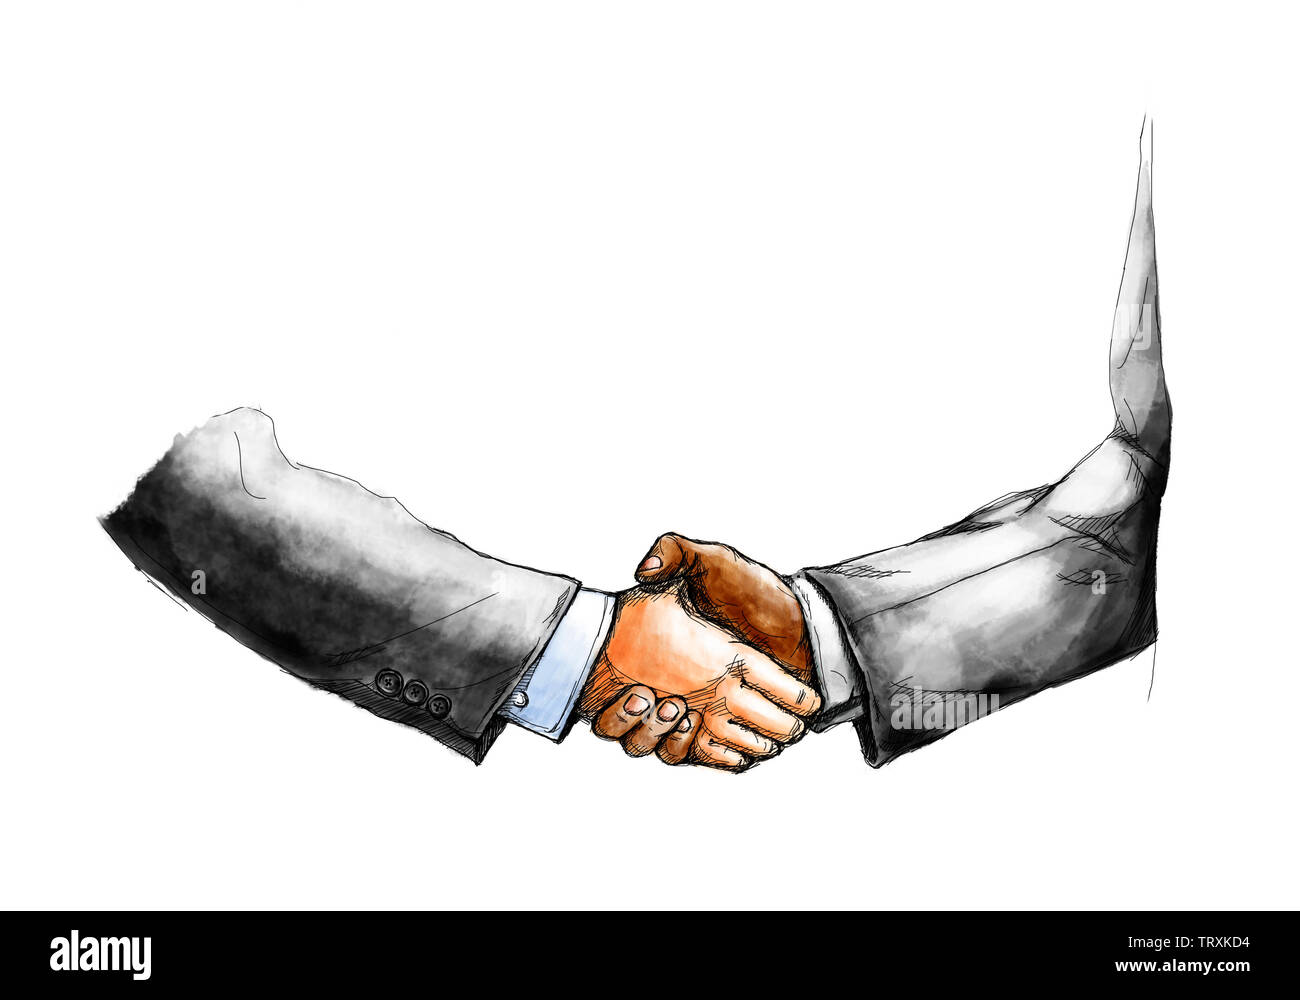 Disegno creativo sketch di due proprietari agitando la mano gli uni con gli altri per fare un affare dopo l'accordo isolati su sfondo bianco Foto Stock